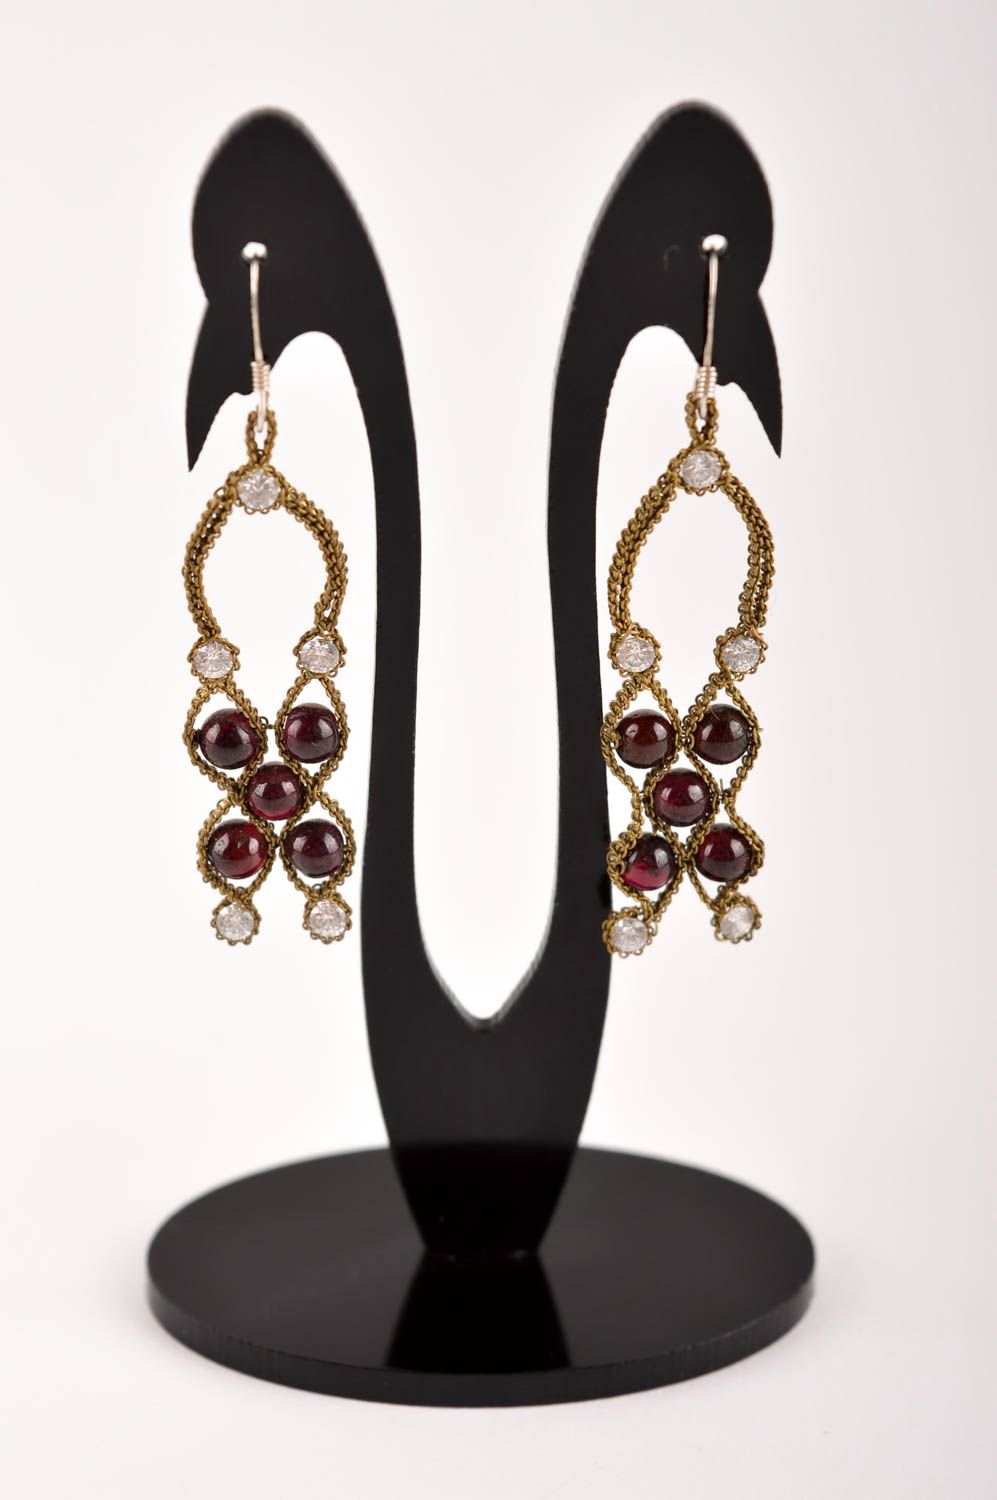 Beautiful handmade metal earrings gemstone earrings artisan jewelry designs photo 5